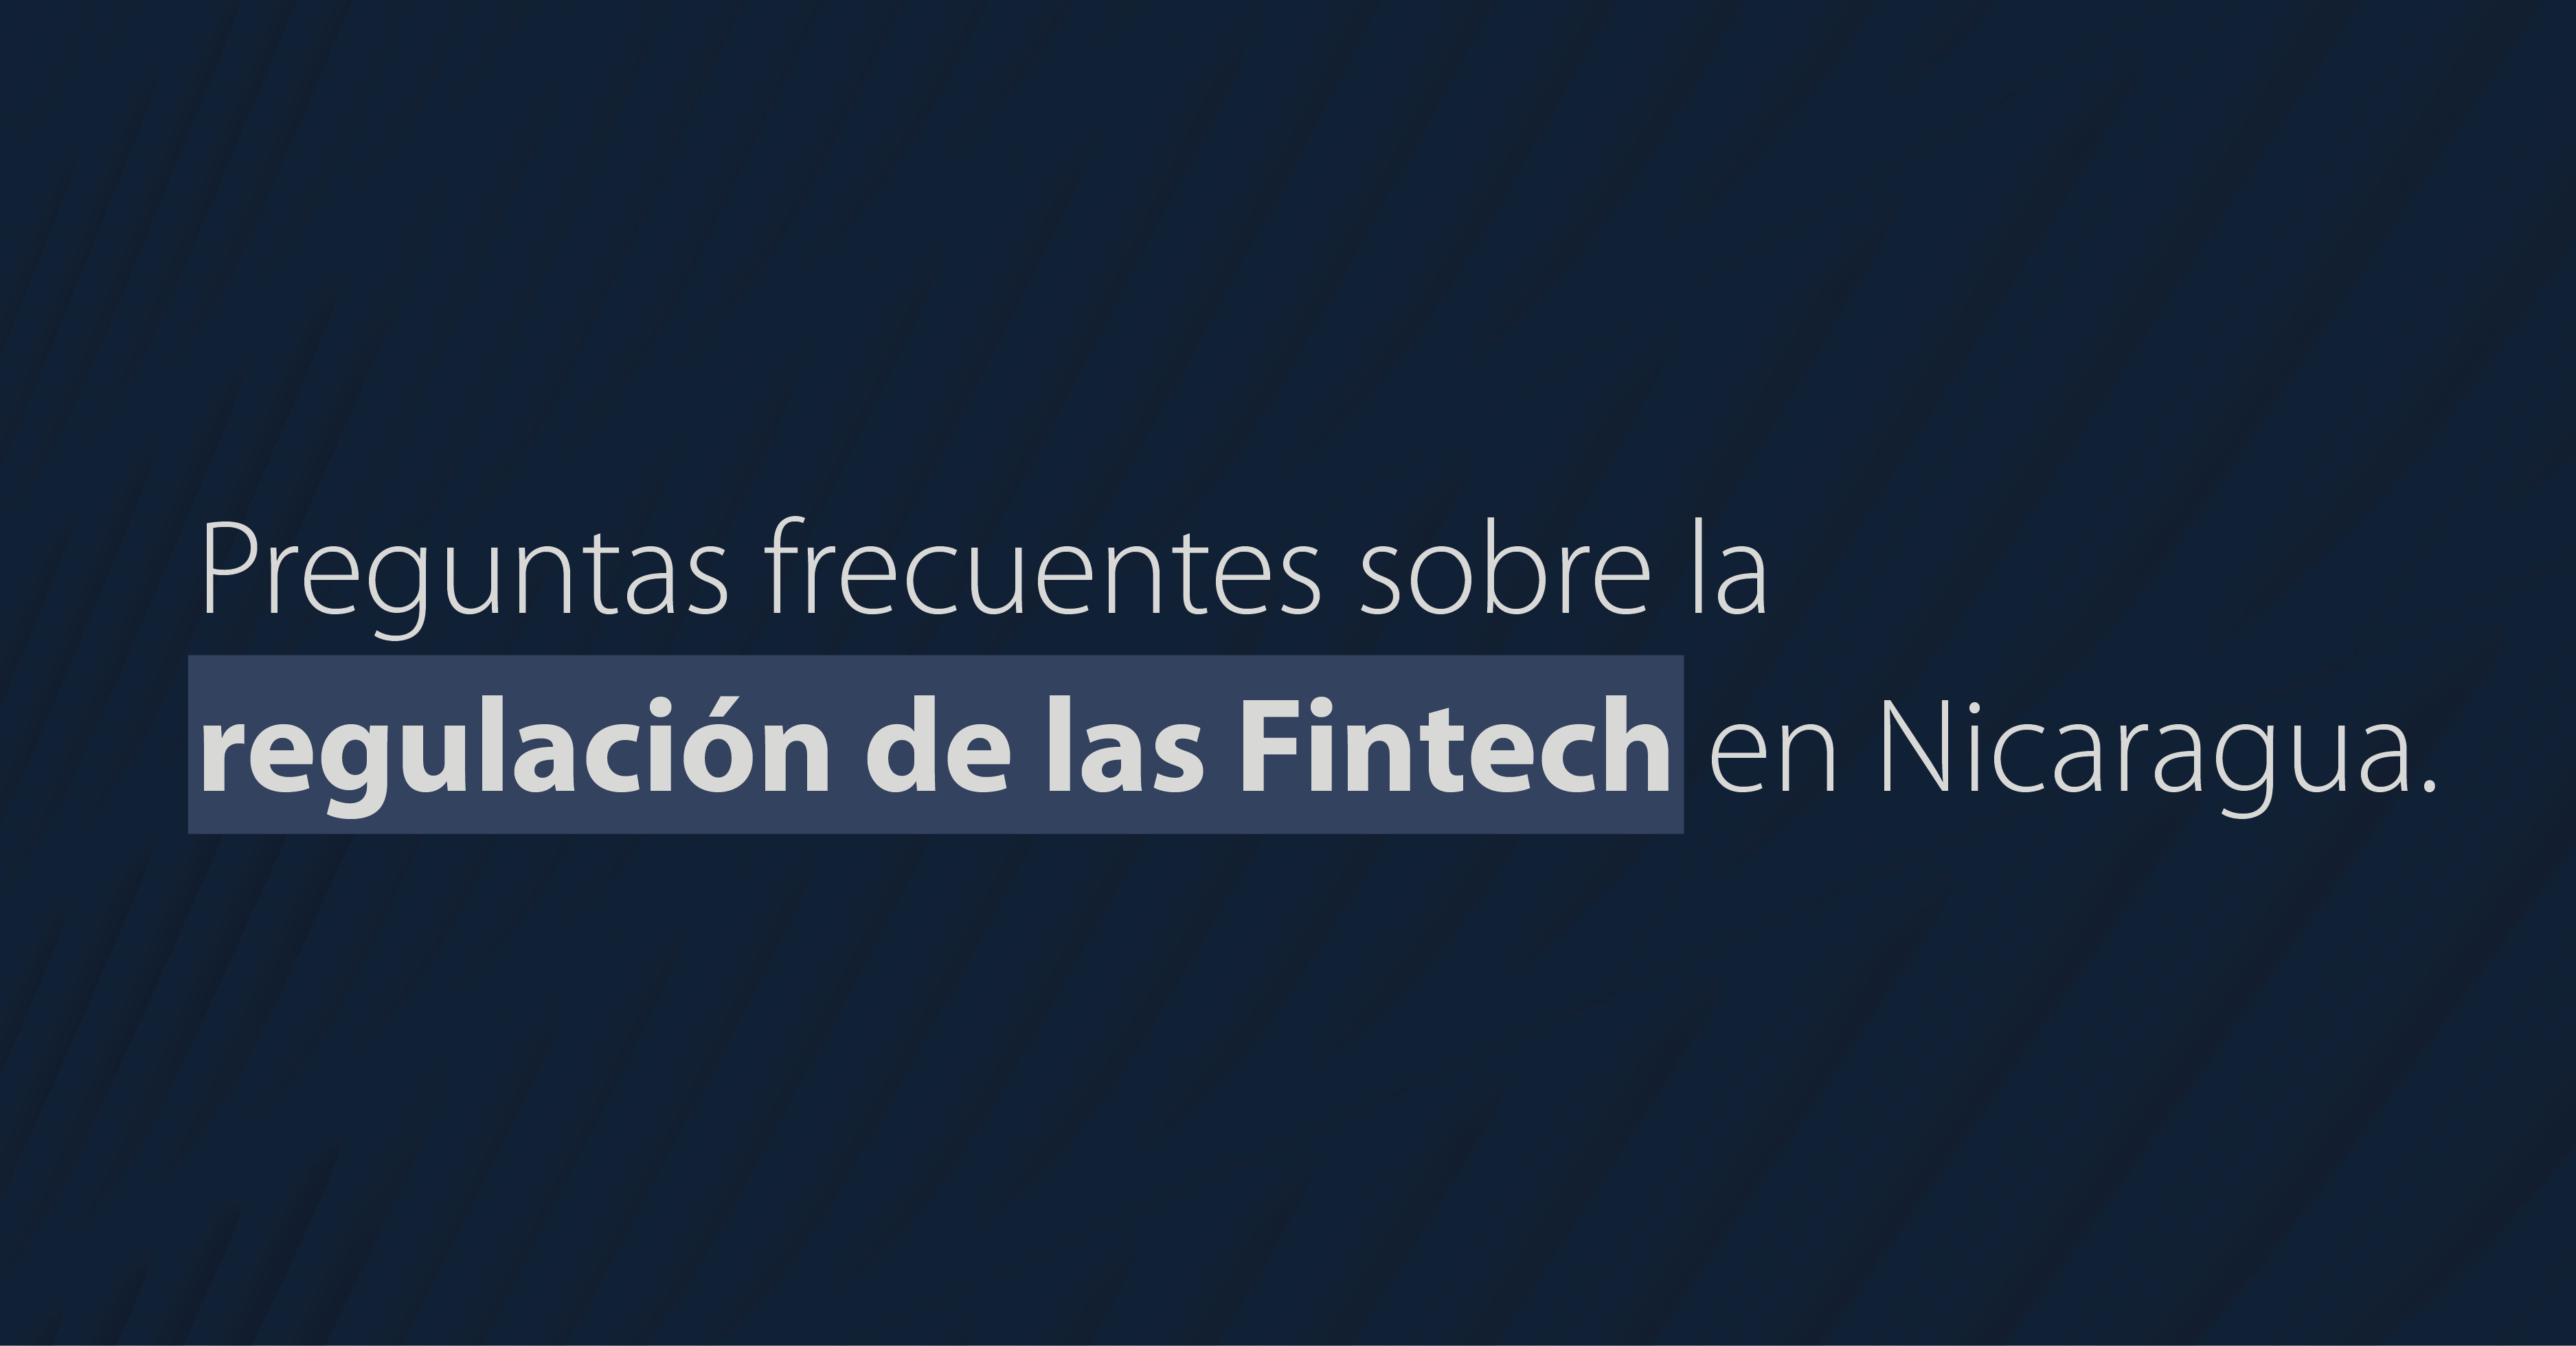 Preguntas frecuentes sobre la regulación de las Fintech en Nicaragua